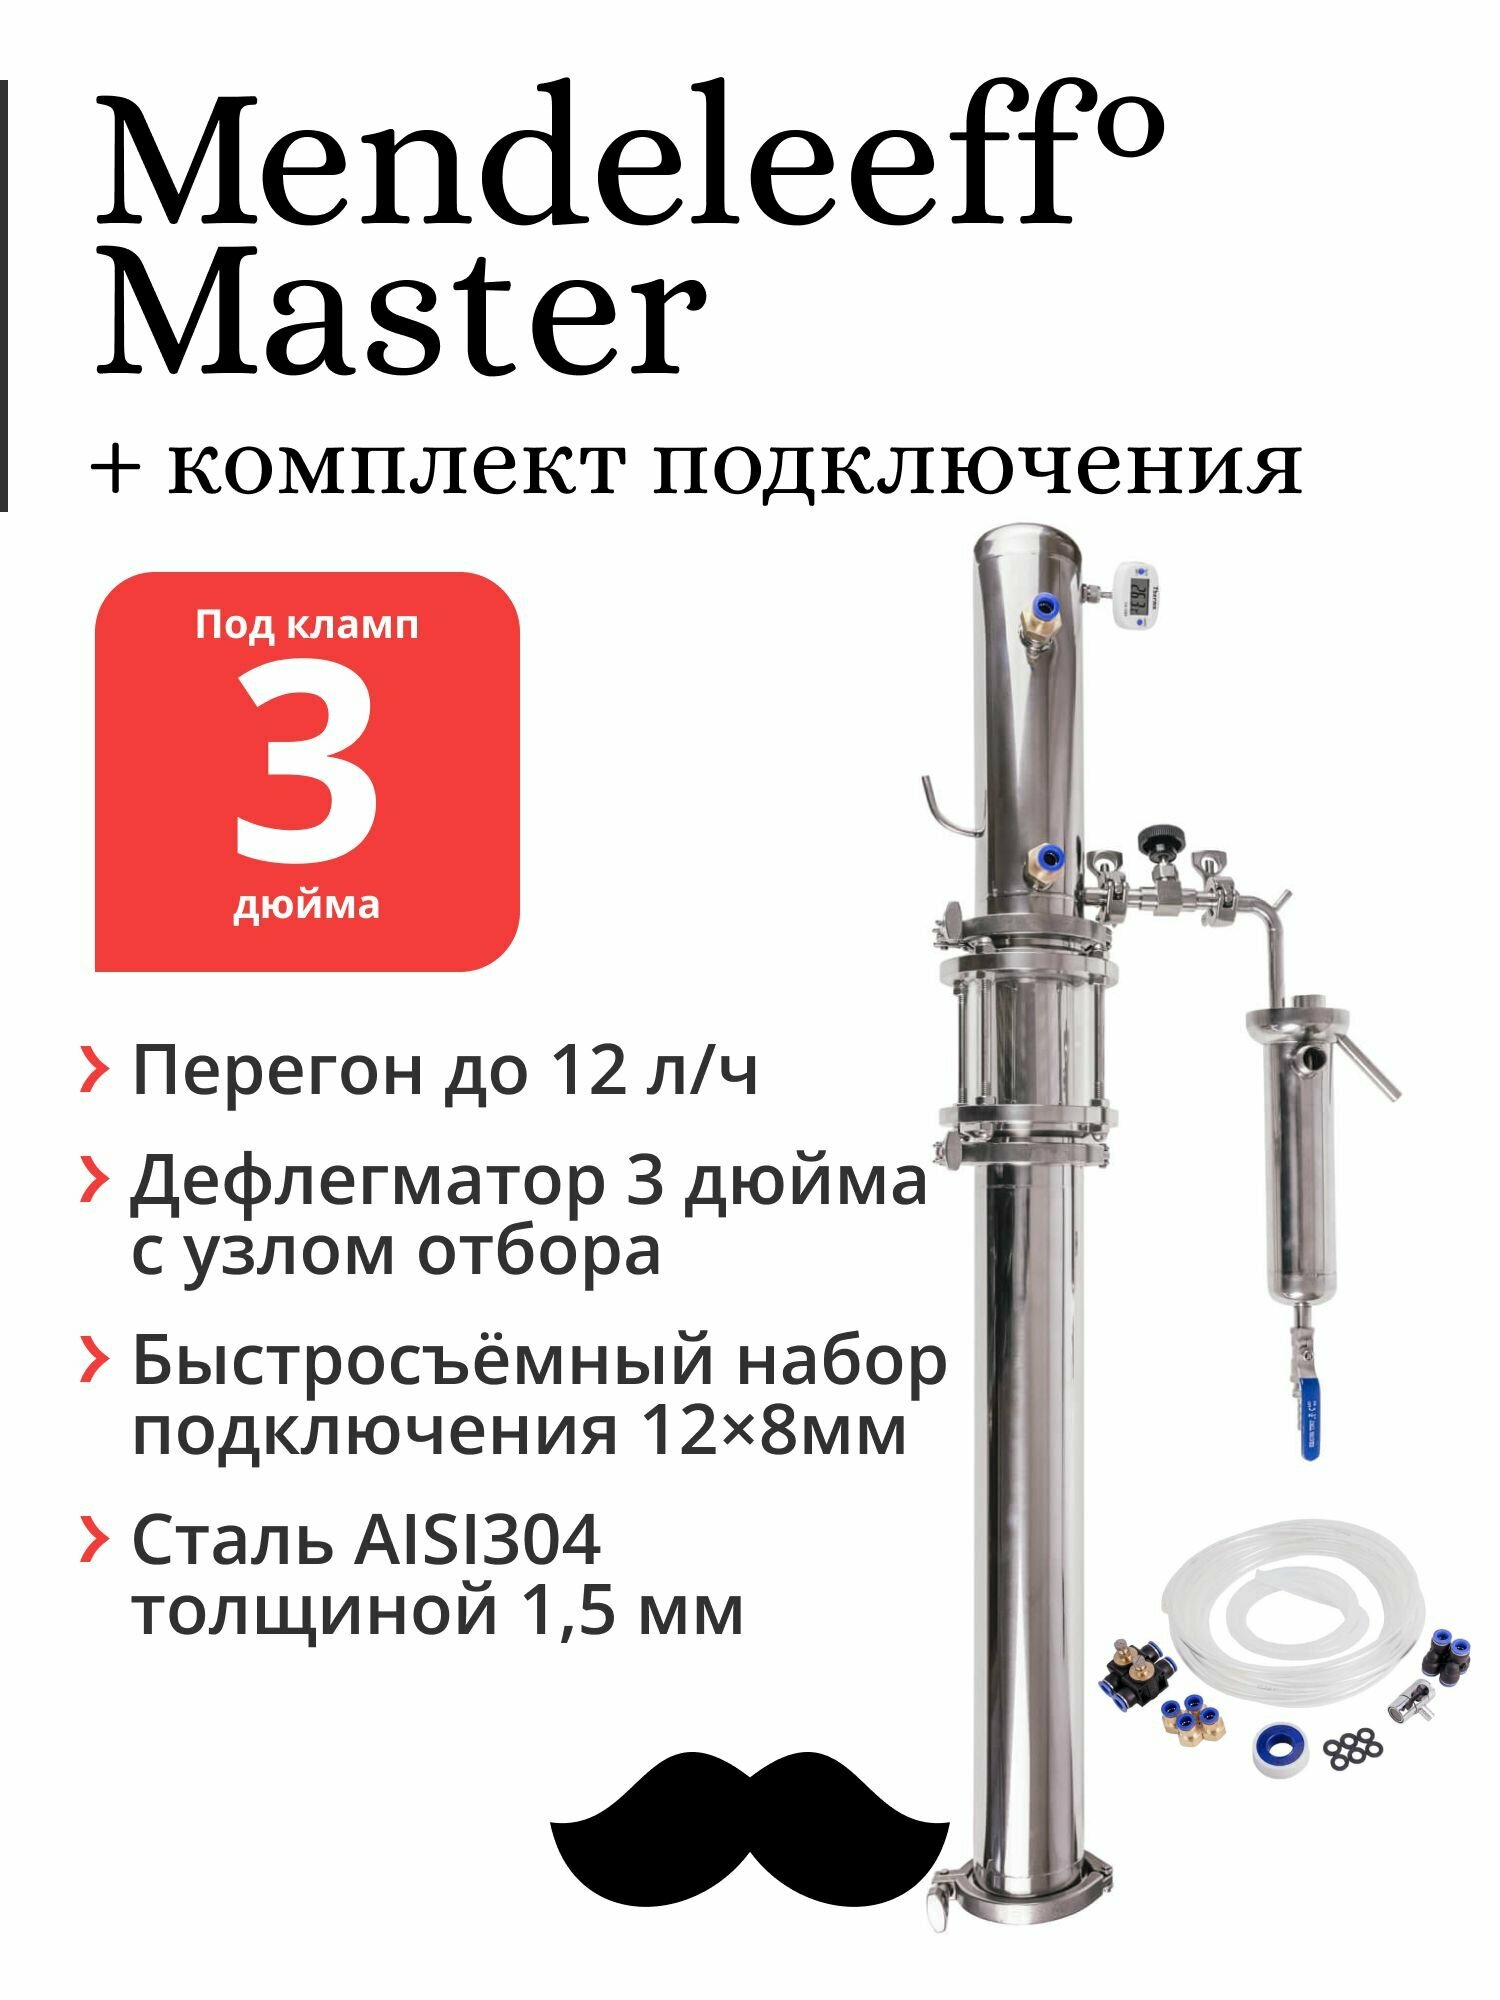 Бражная колонна Mendeleeff Master 3 дюйма, дефлегматор 3 дюйма с узлом отбора, с быстросъёмным комплектом подключения